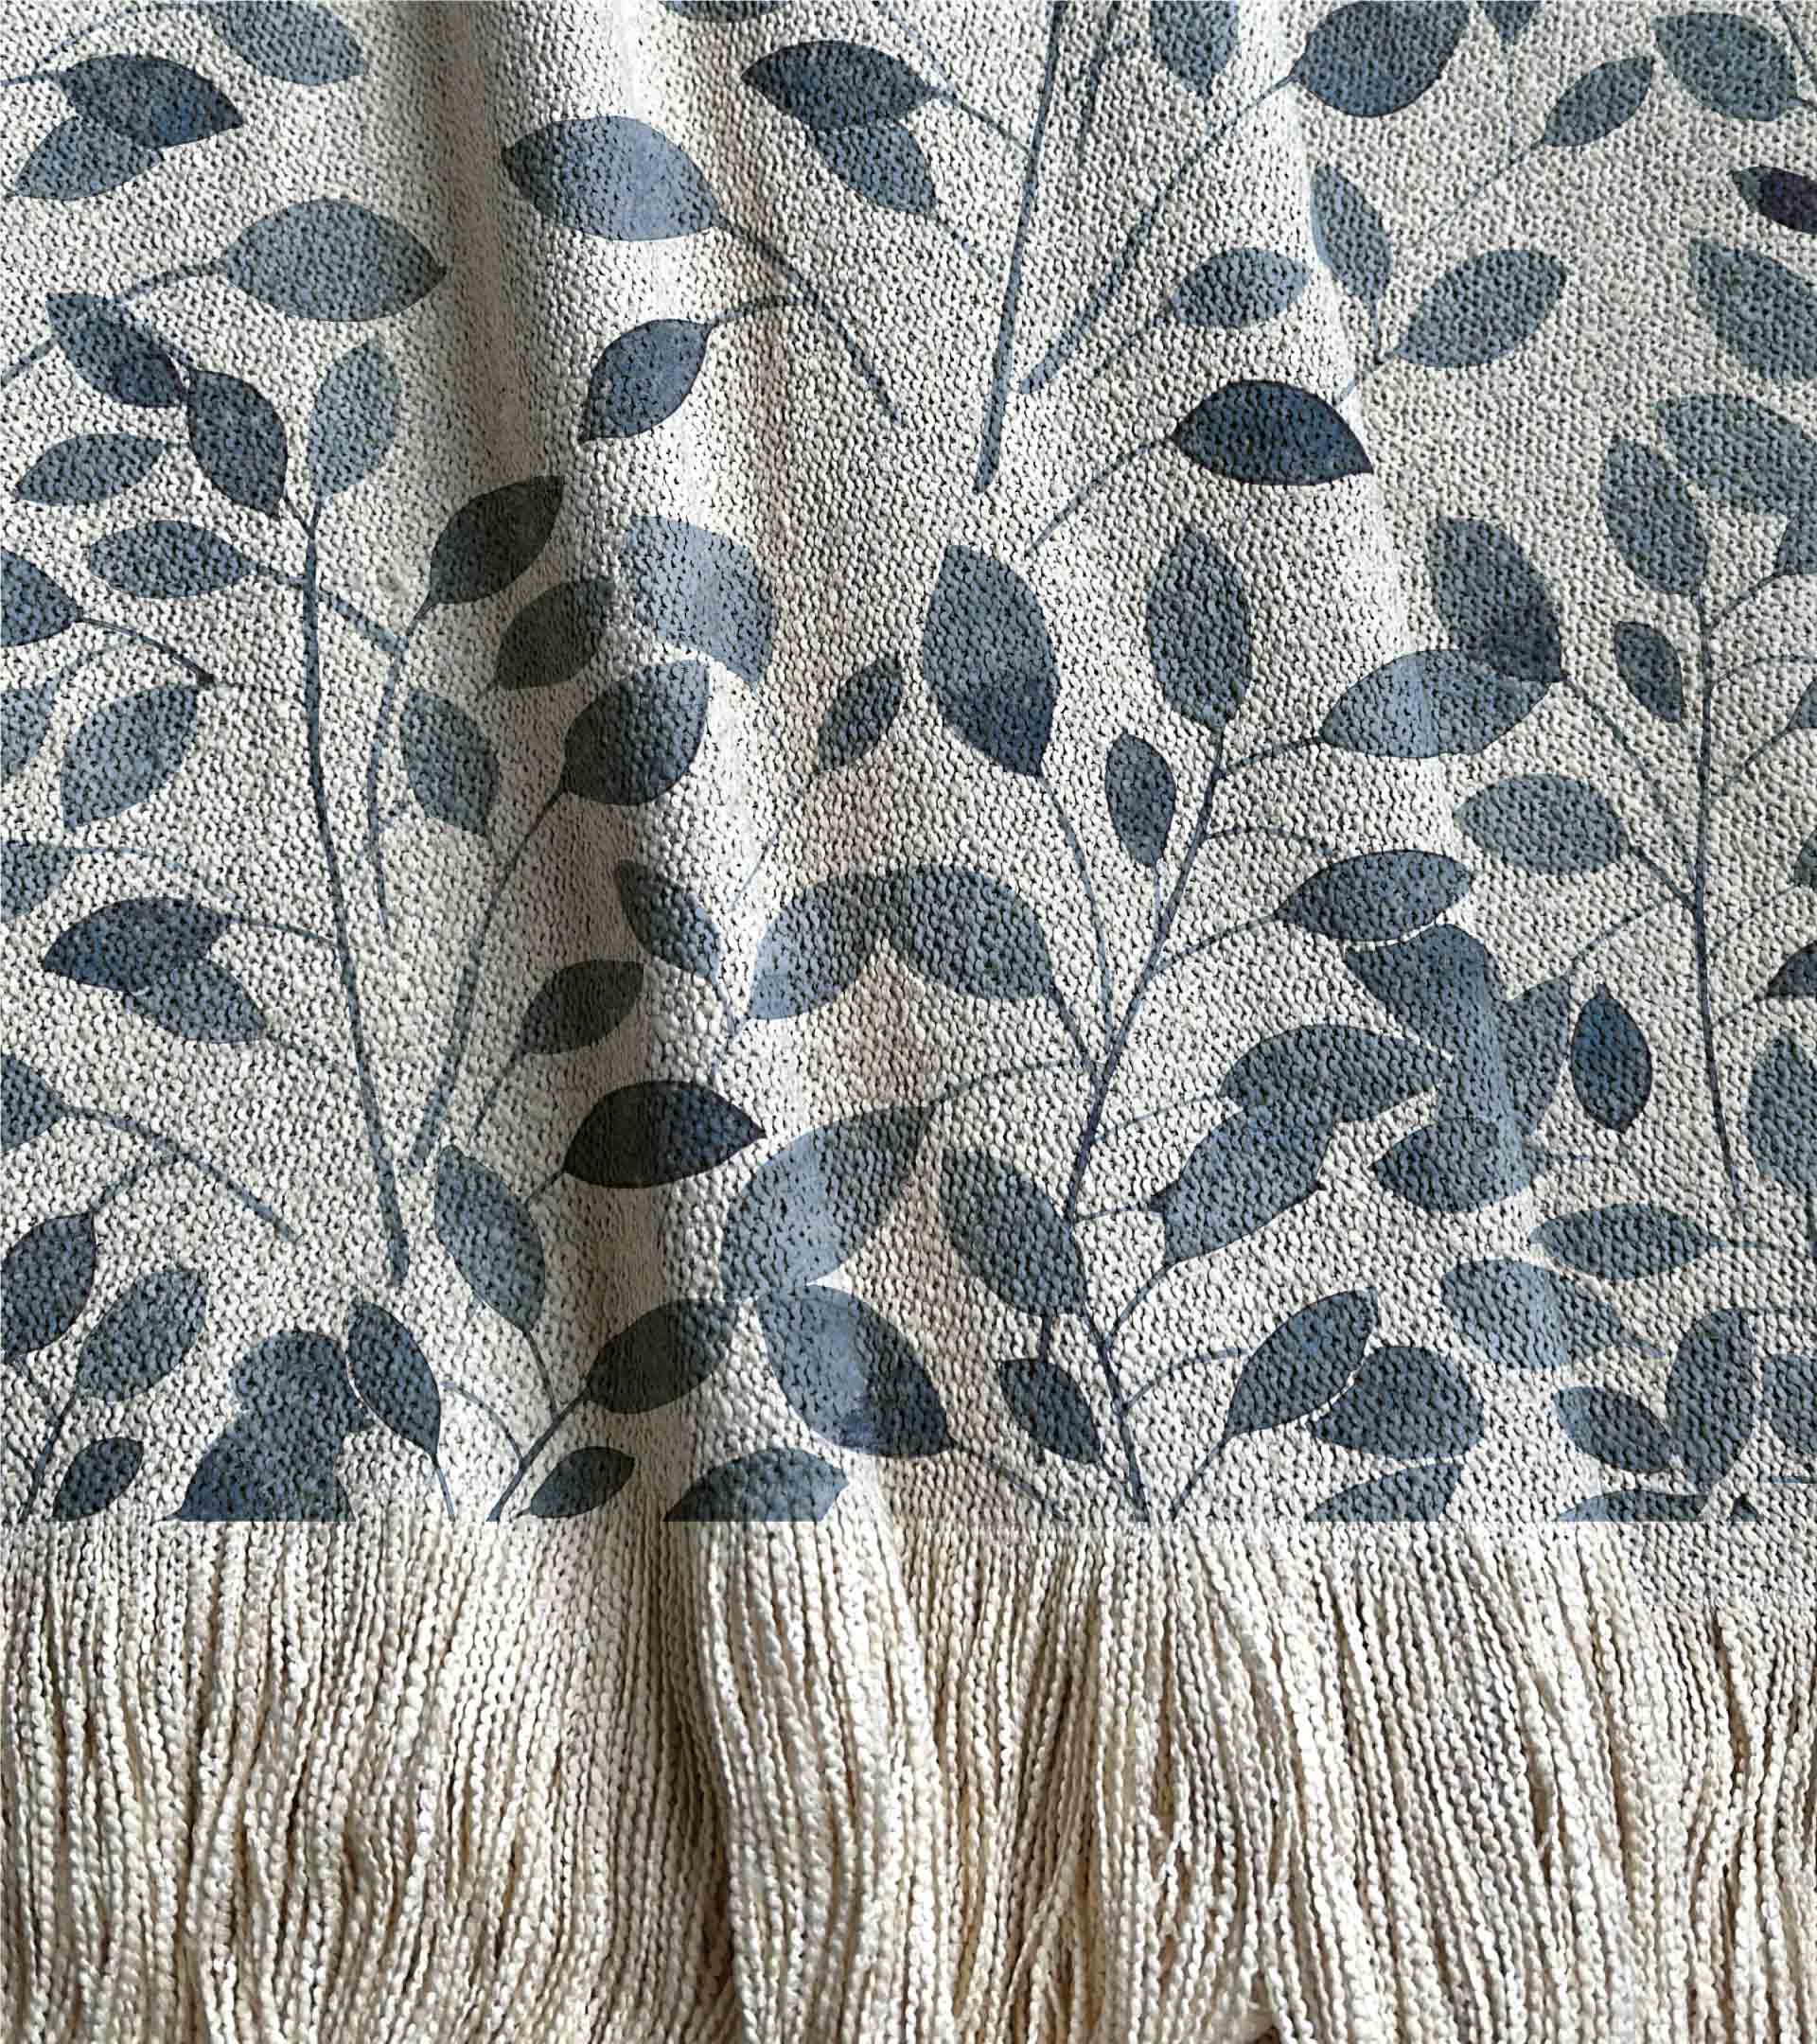 Manta tejida, diseño botanico con hojas y ramas de color azul